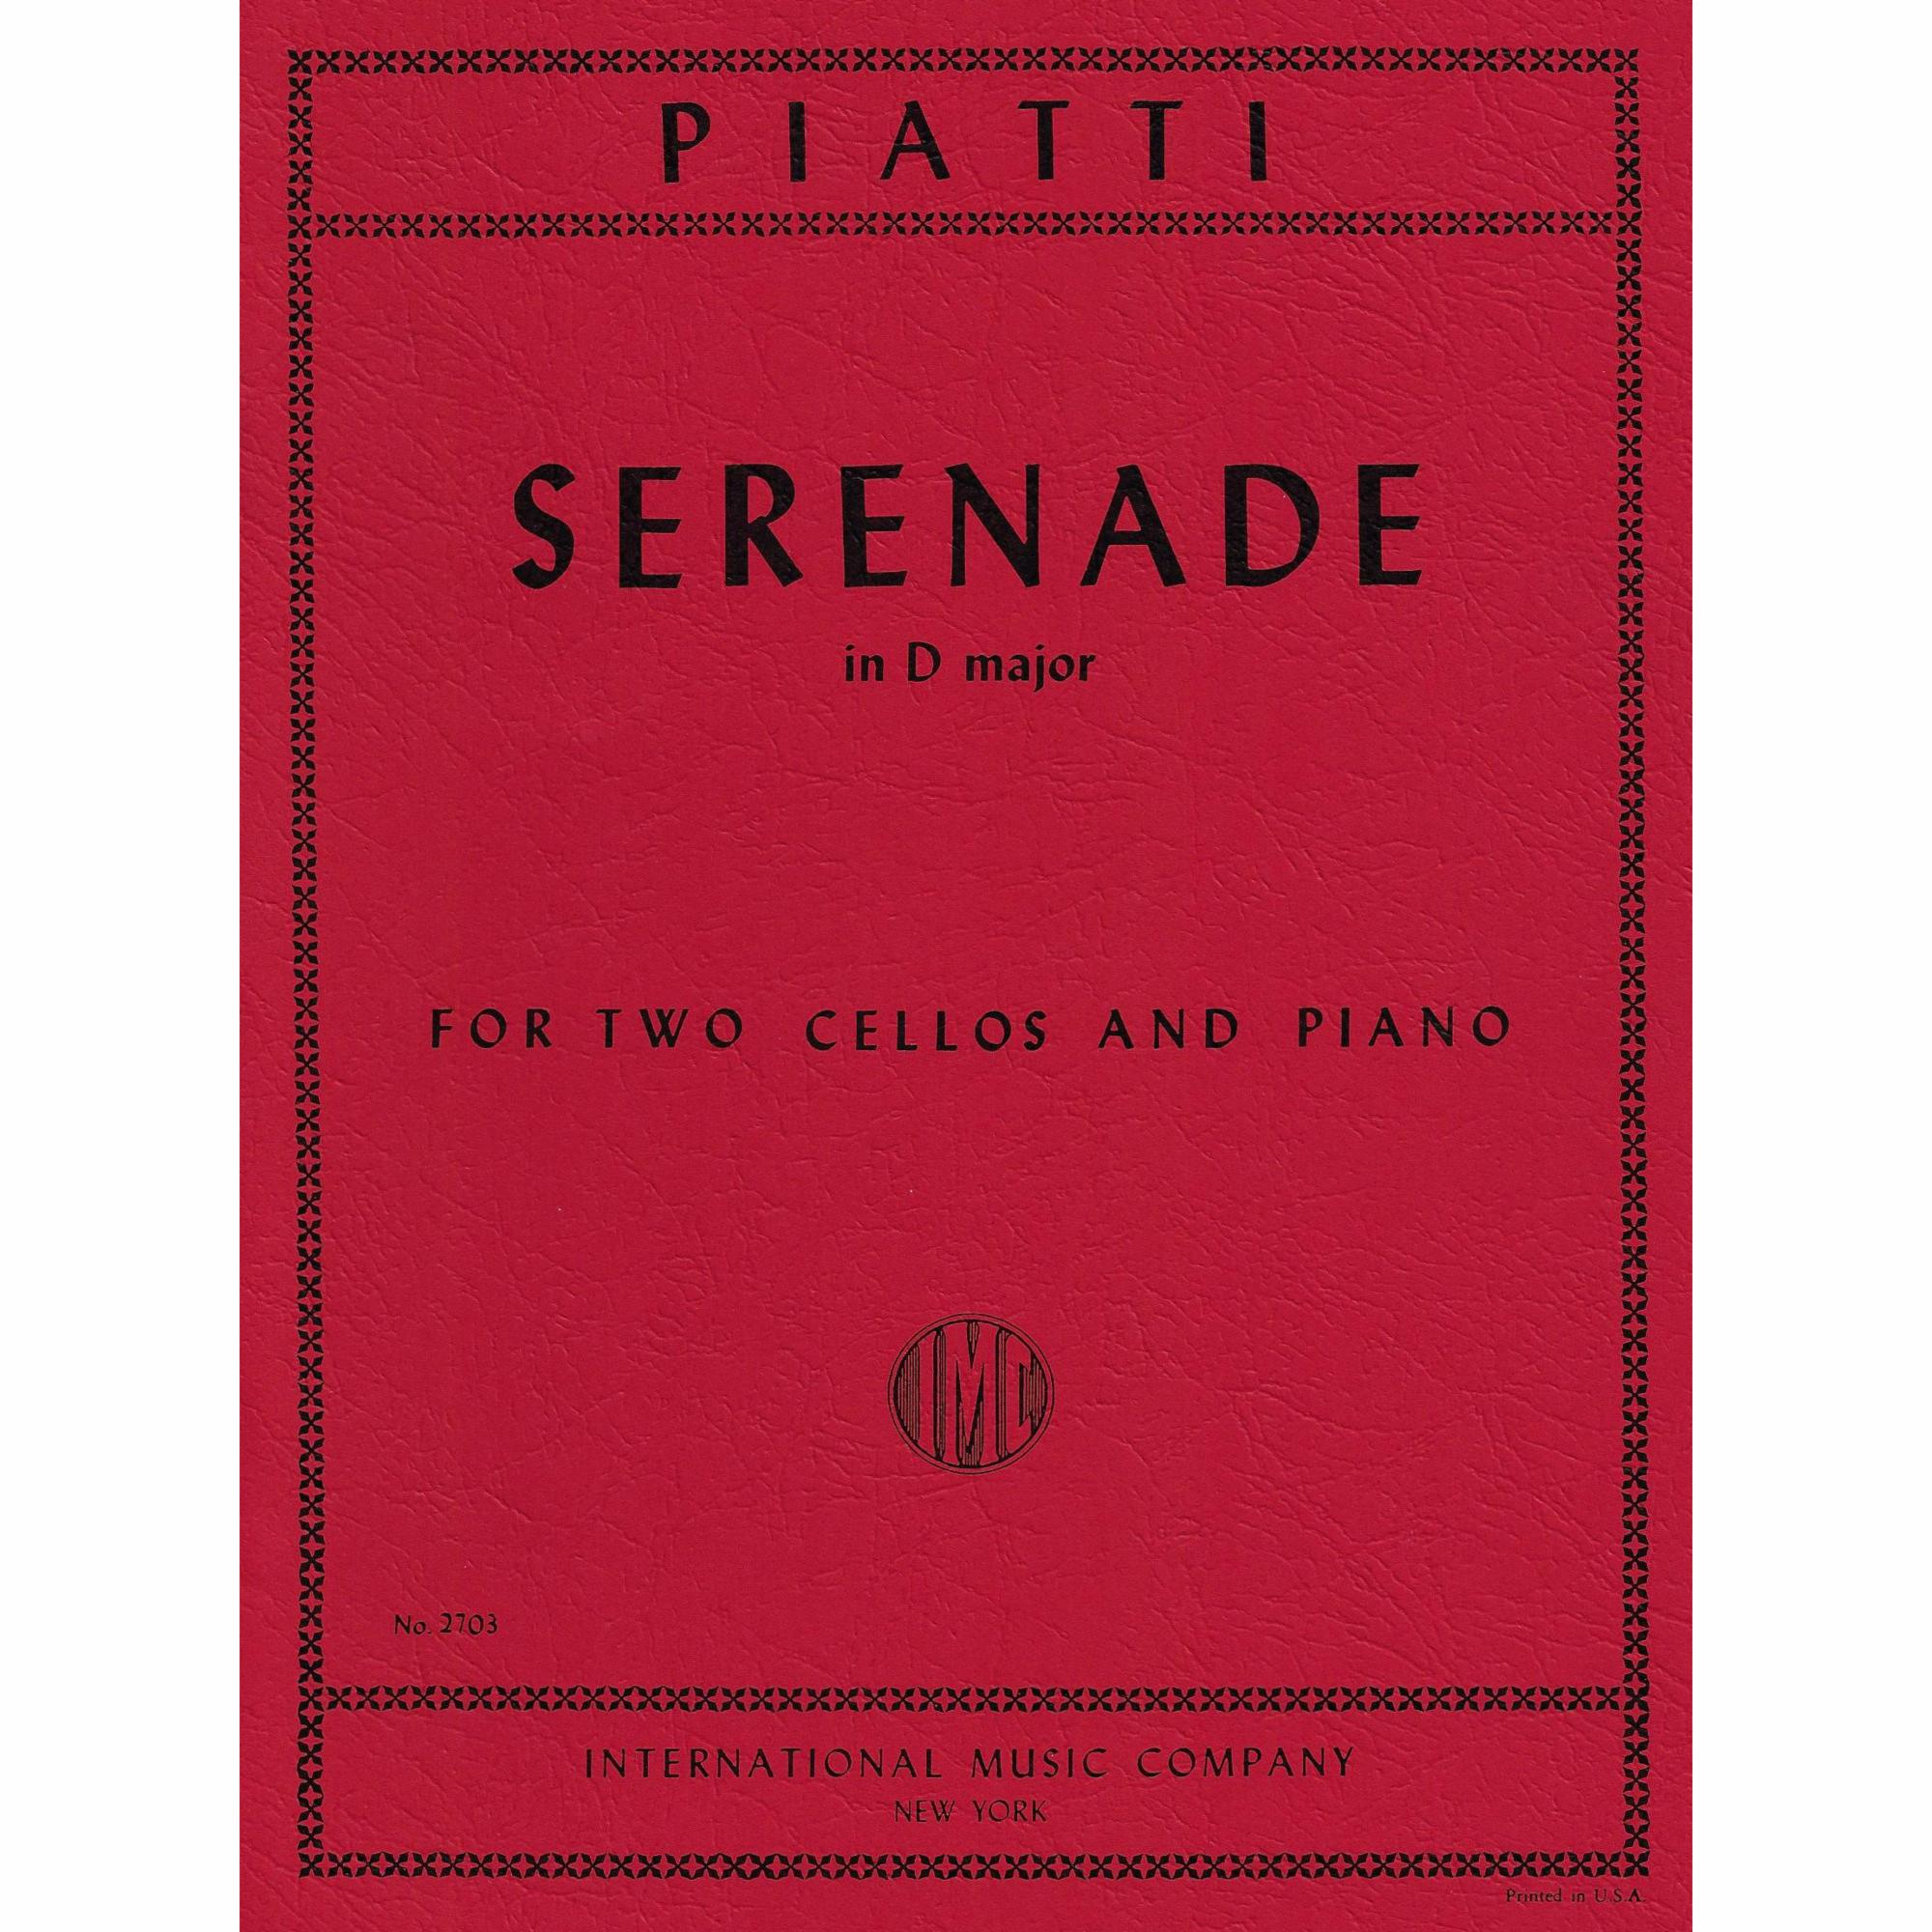 Piatti -- Serenade in D Major for Two Cellos and Piano